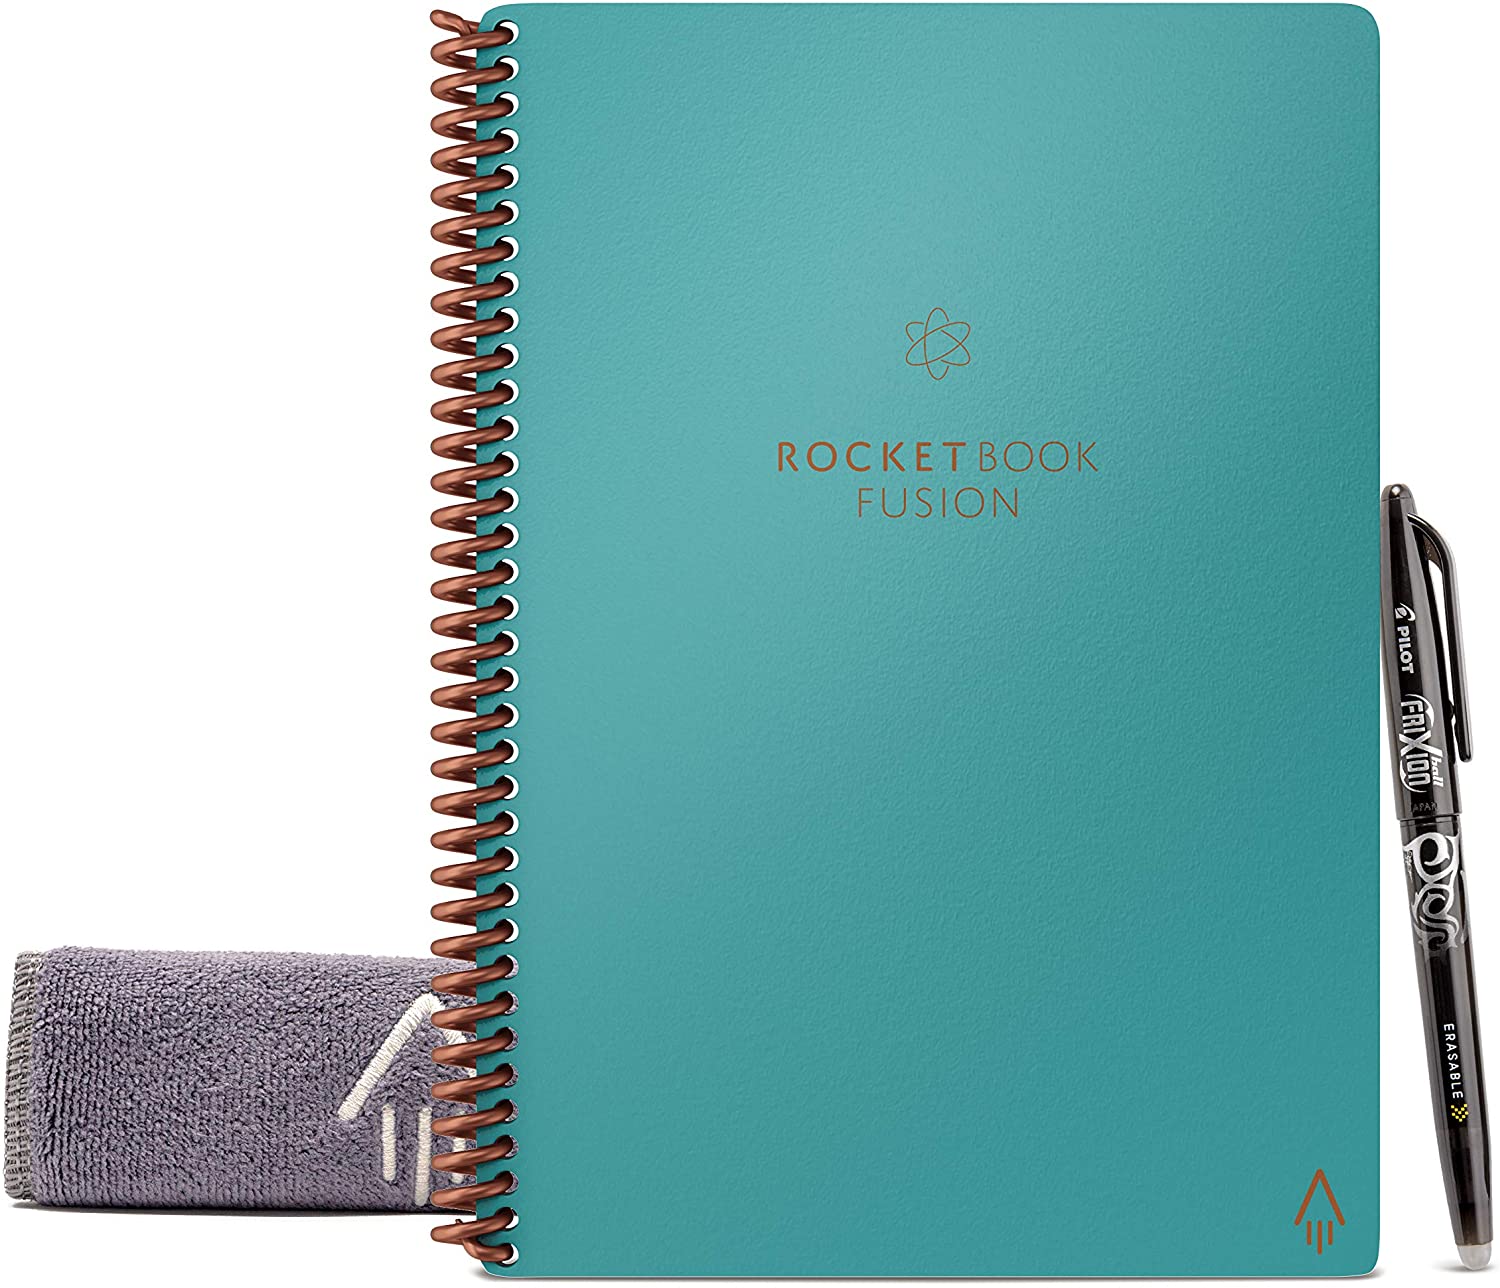 rocketbook smart reusable notebook